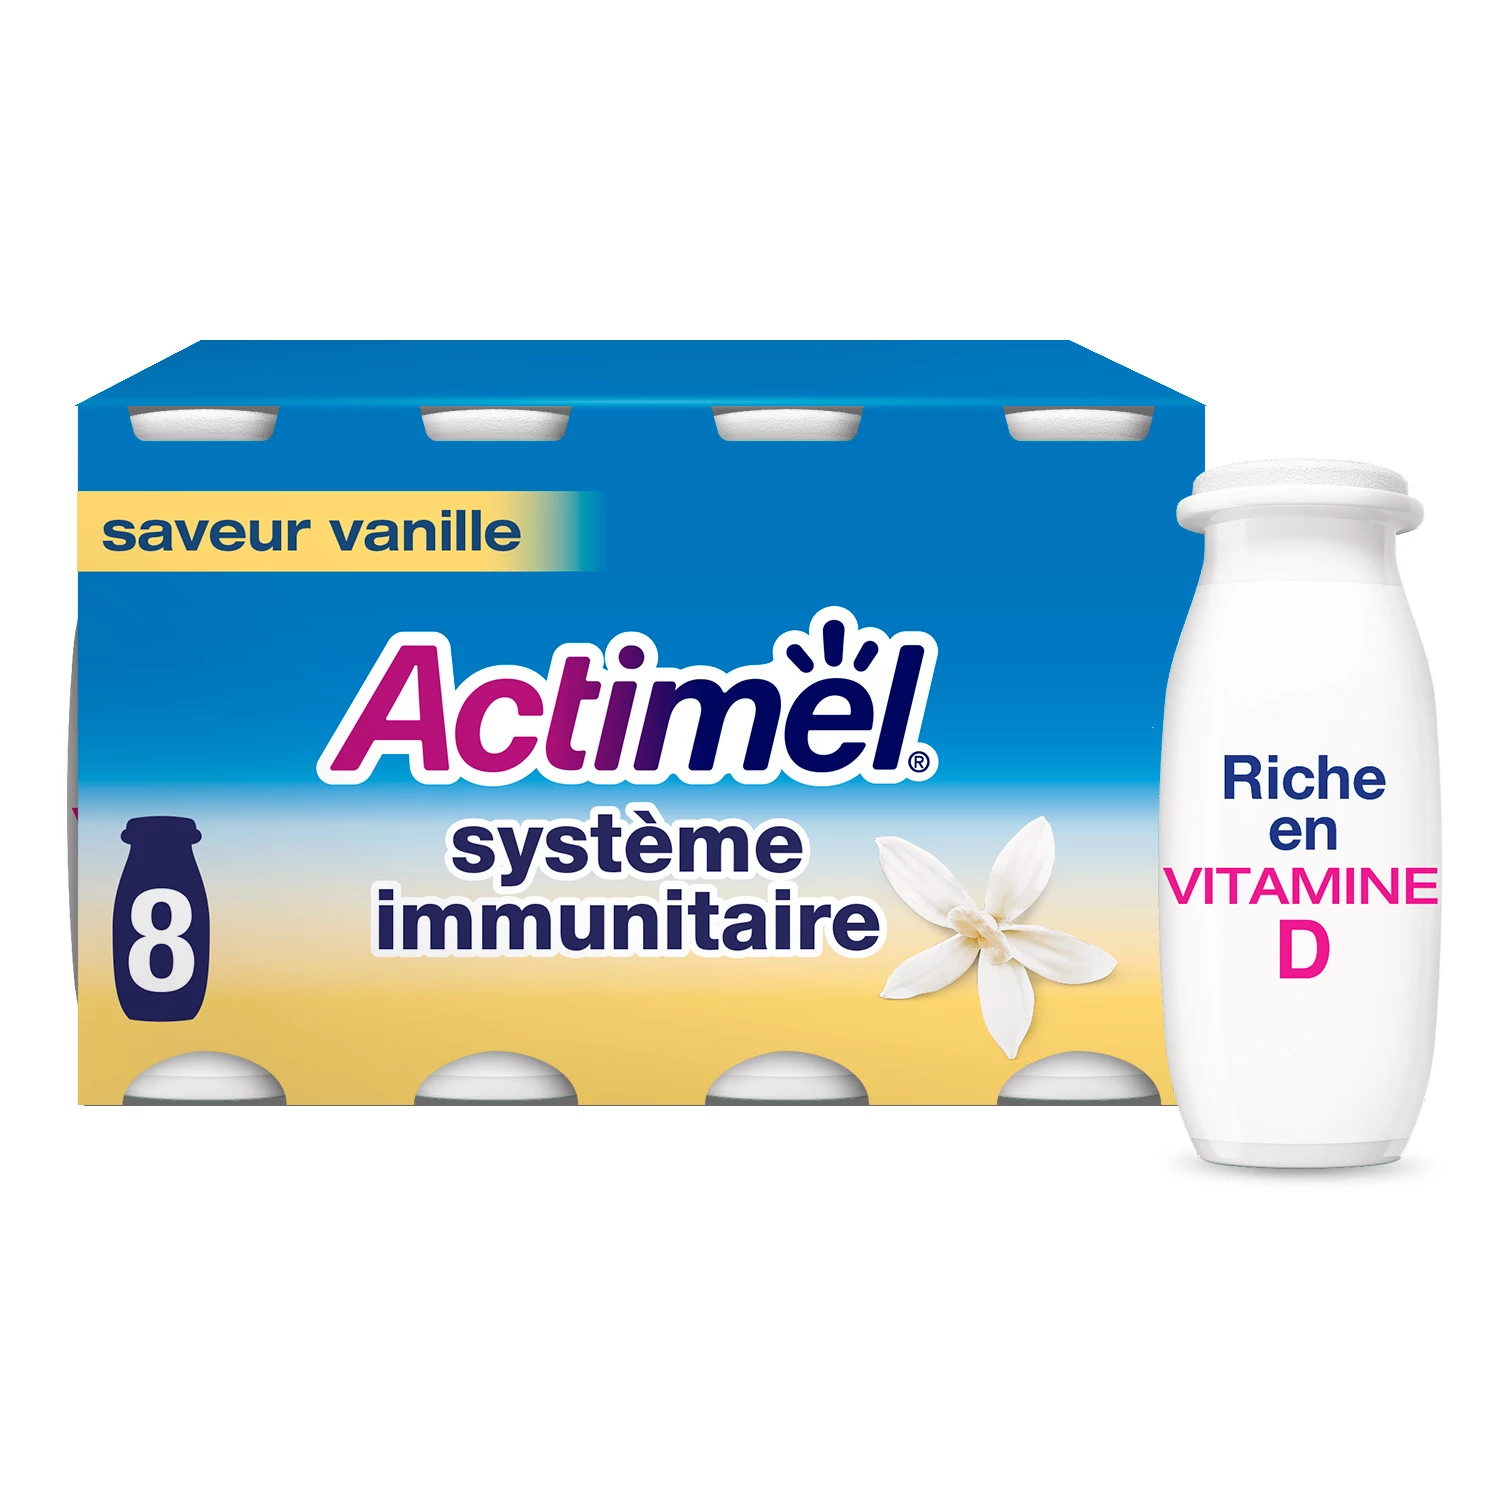 8 香草饮用酸奶 - ACTIMEL